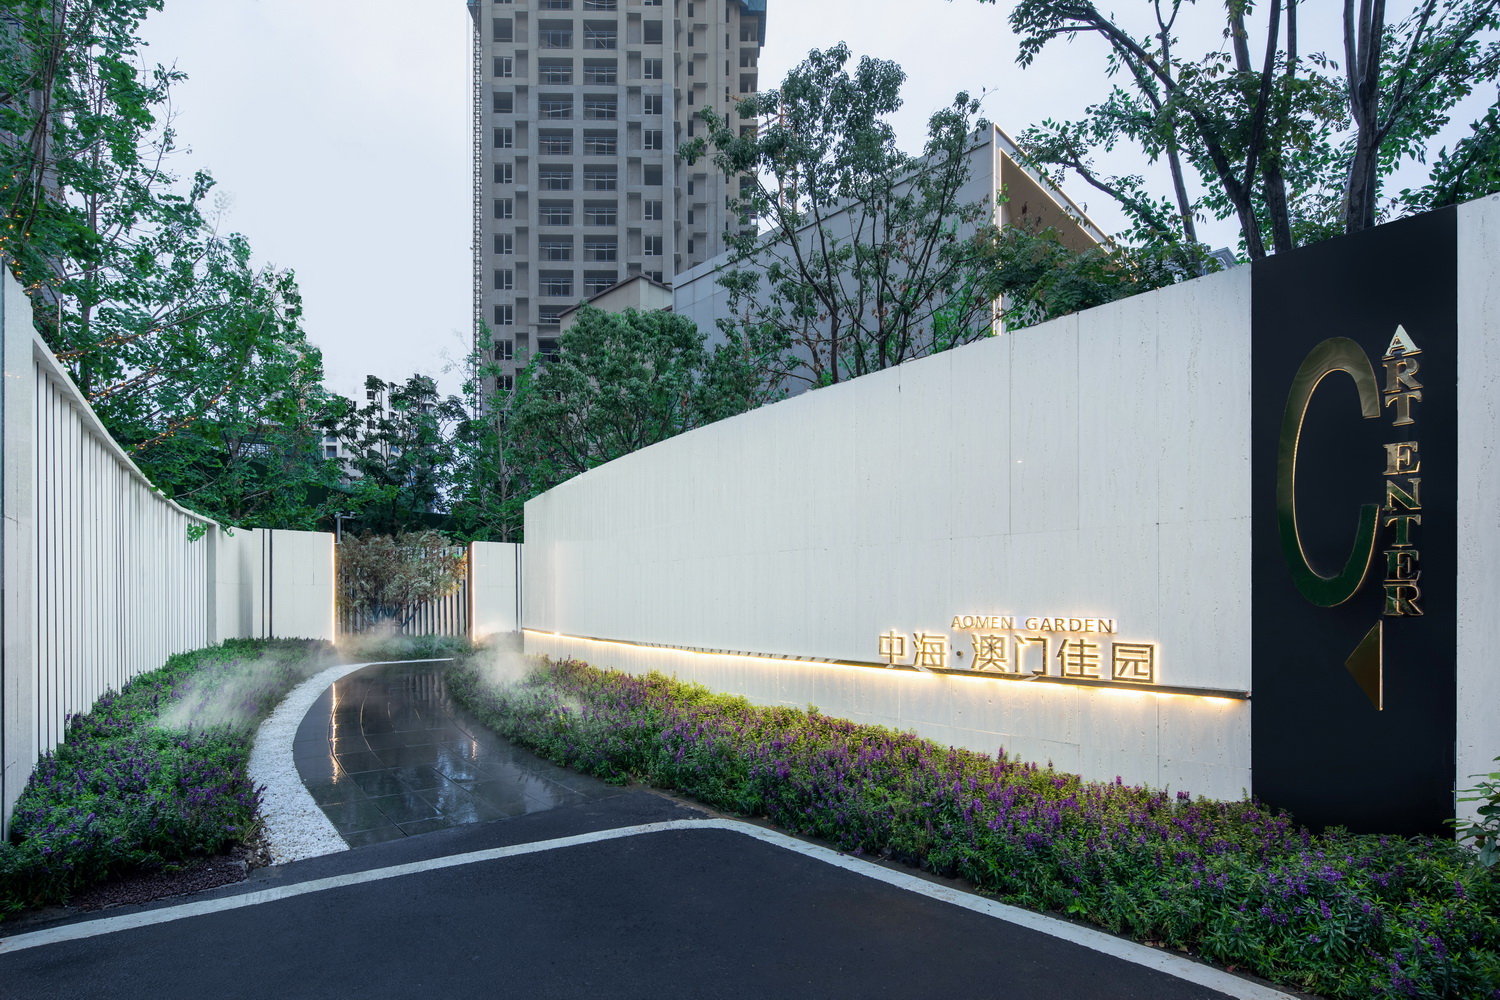 武汉中海·澳门佳园展示区景观设计/EADG泛亚国际